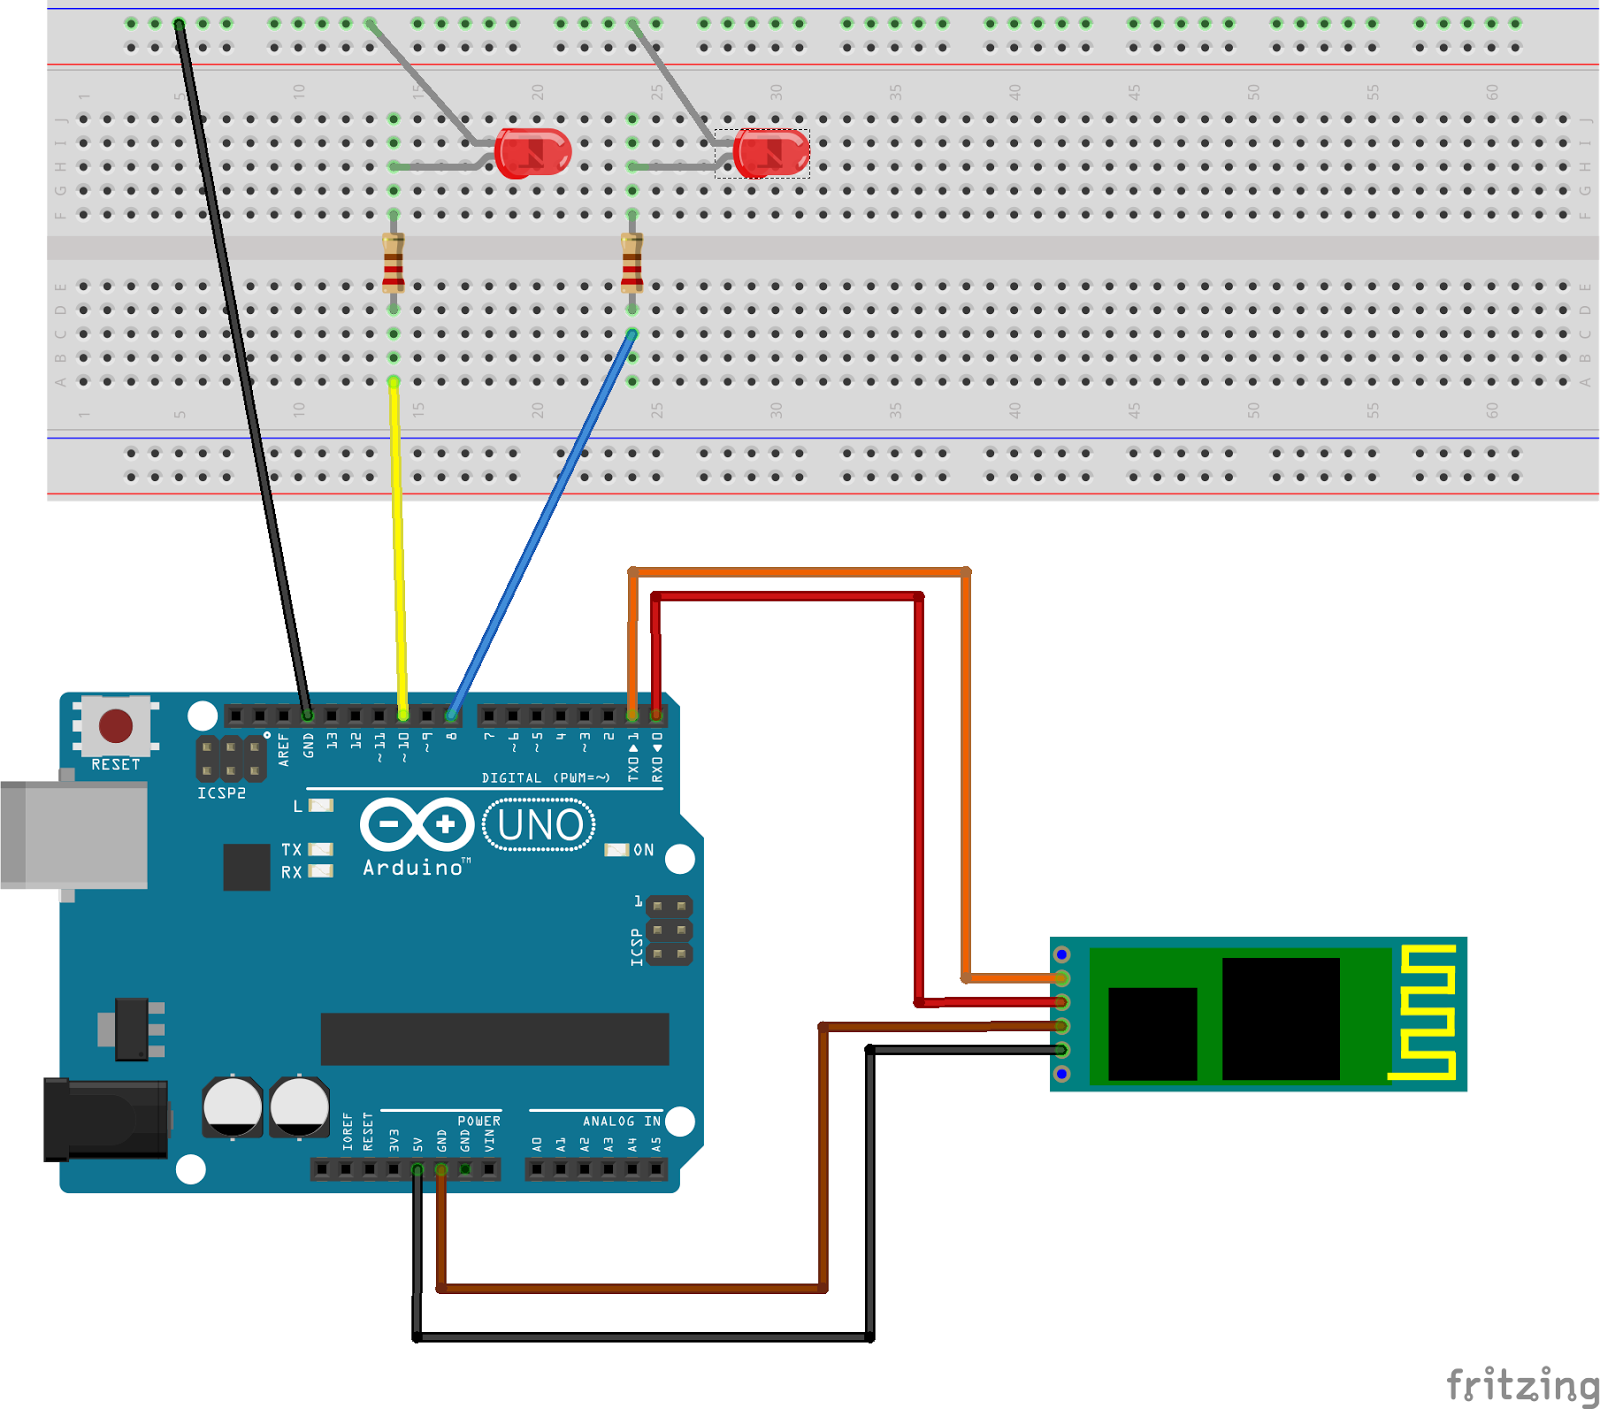 Как собрать и настроить квадрокоптер на базе ардуино (arduino)?